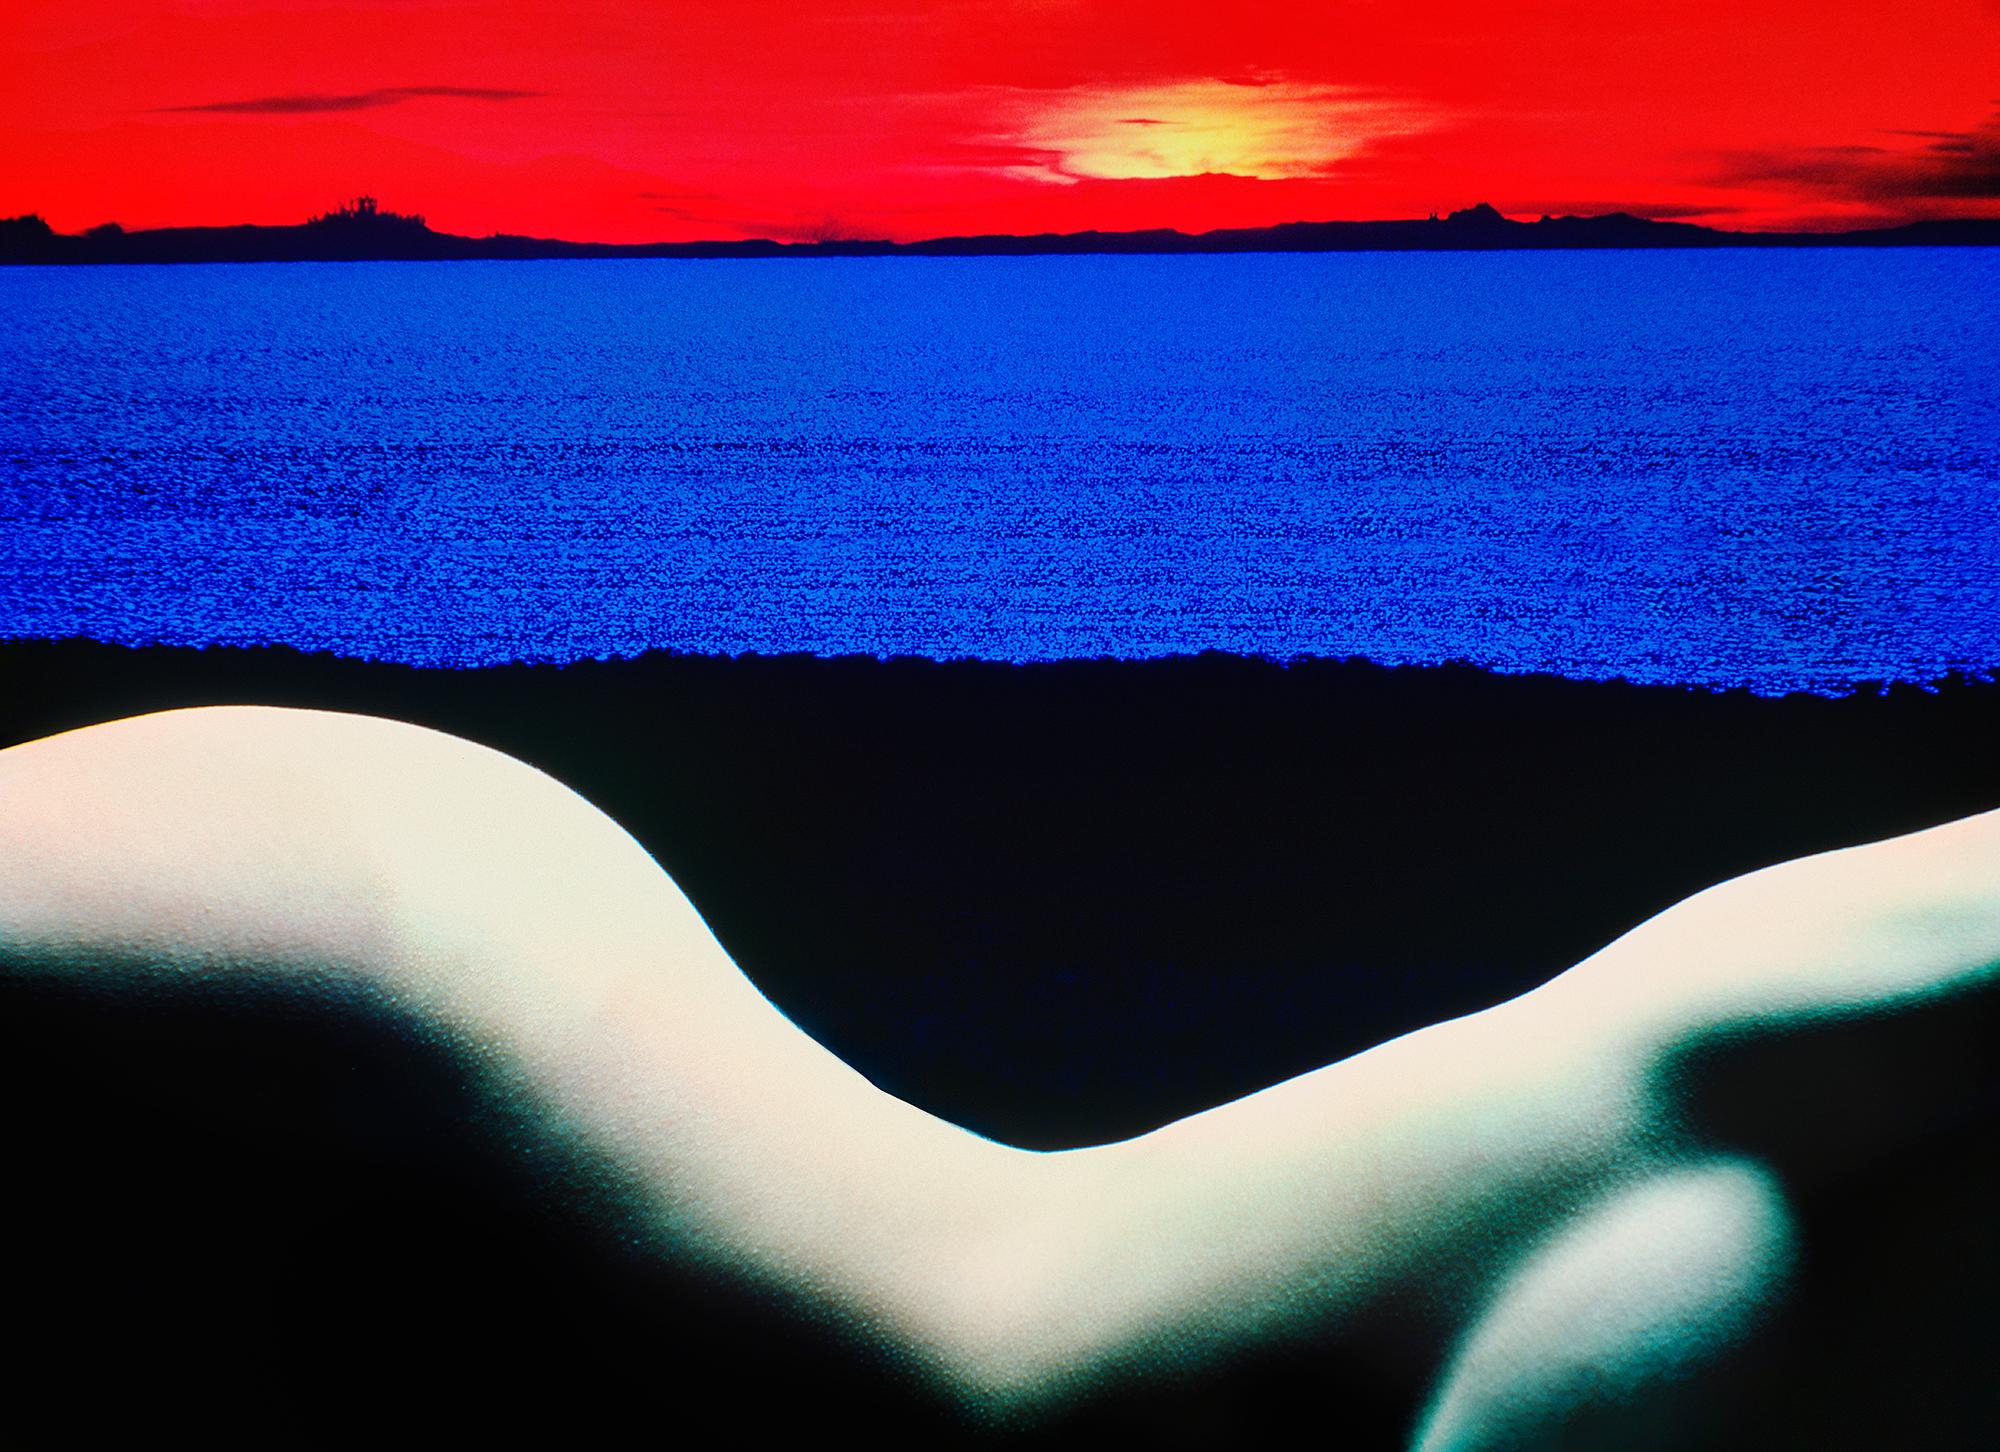 Mitchell Funk Nude Photograph – Kurvenreicher Akt in surrealer Landschaft in Rot und Blau – Albumcover